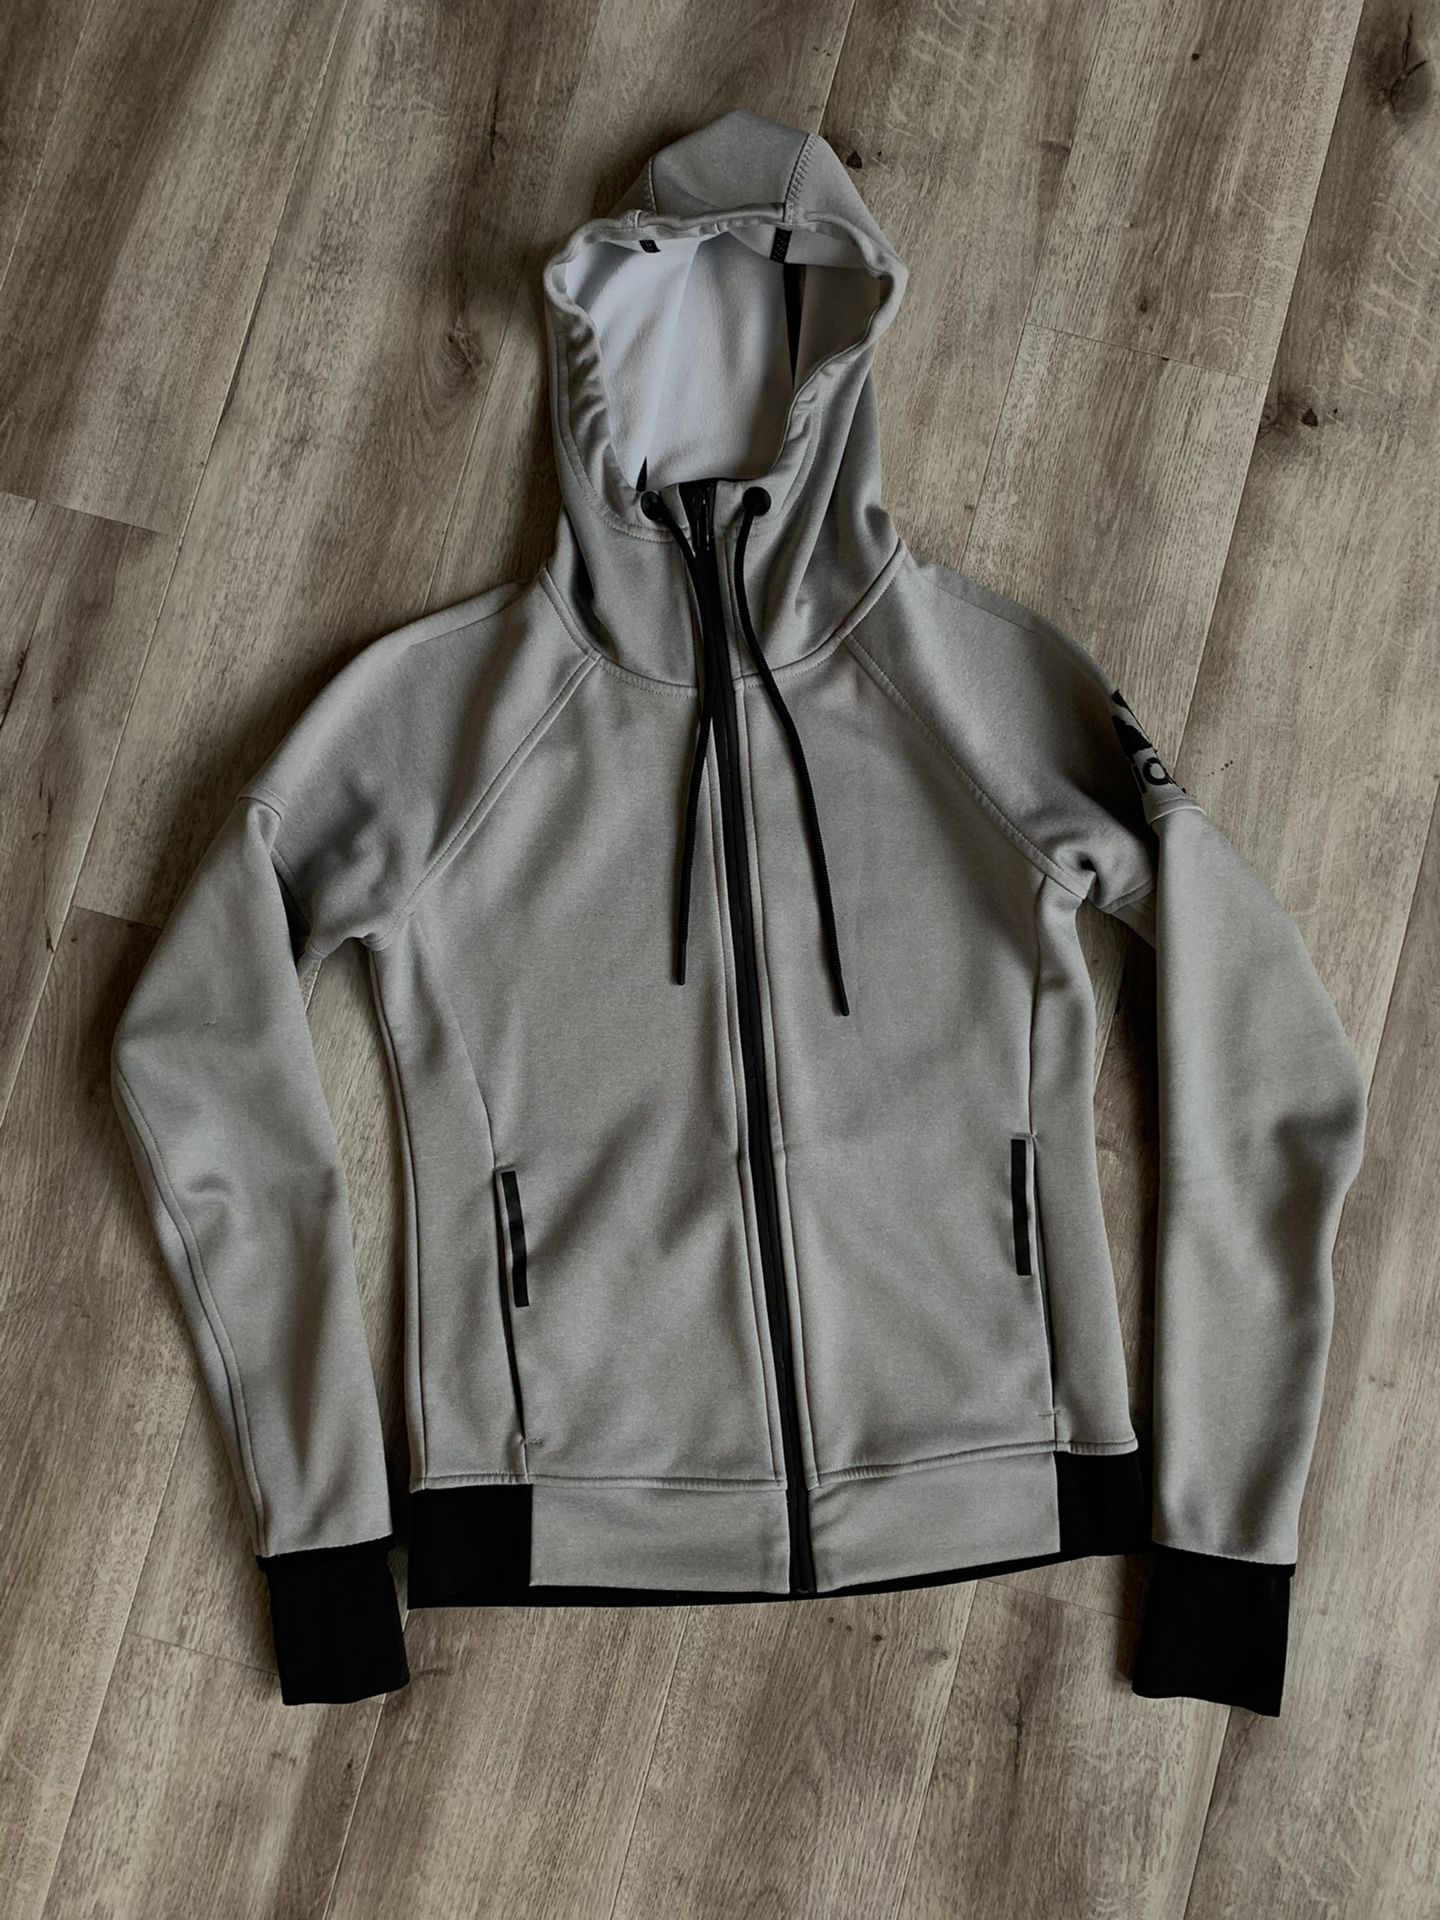 adidas women’s zip-up hoodie / jacket